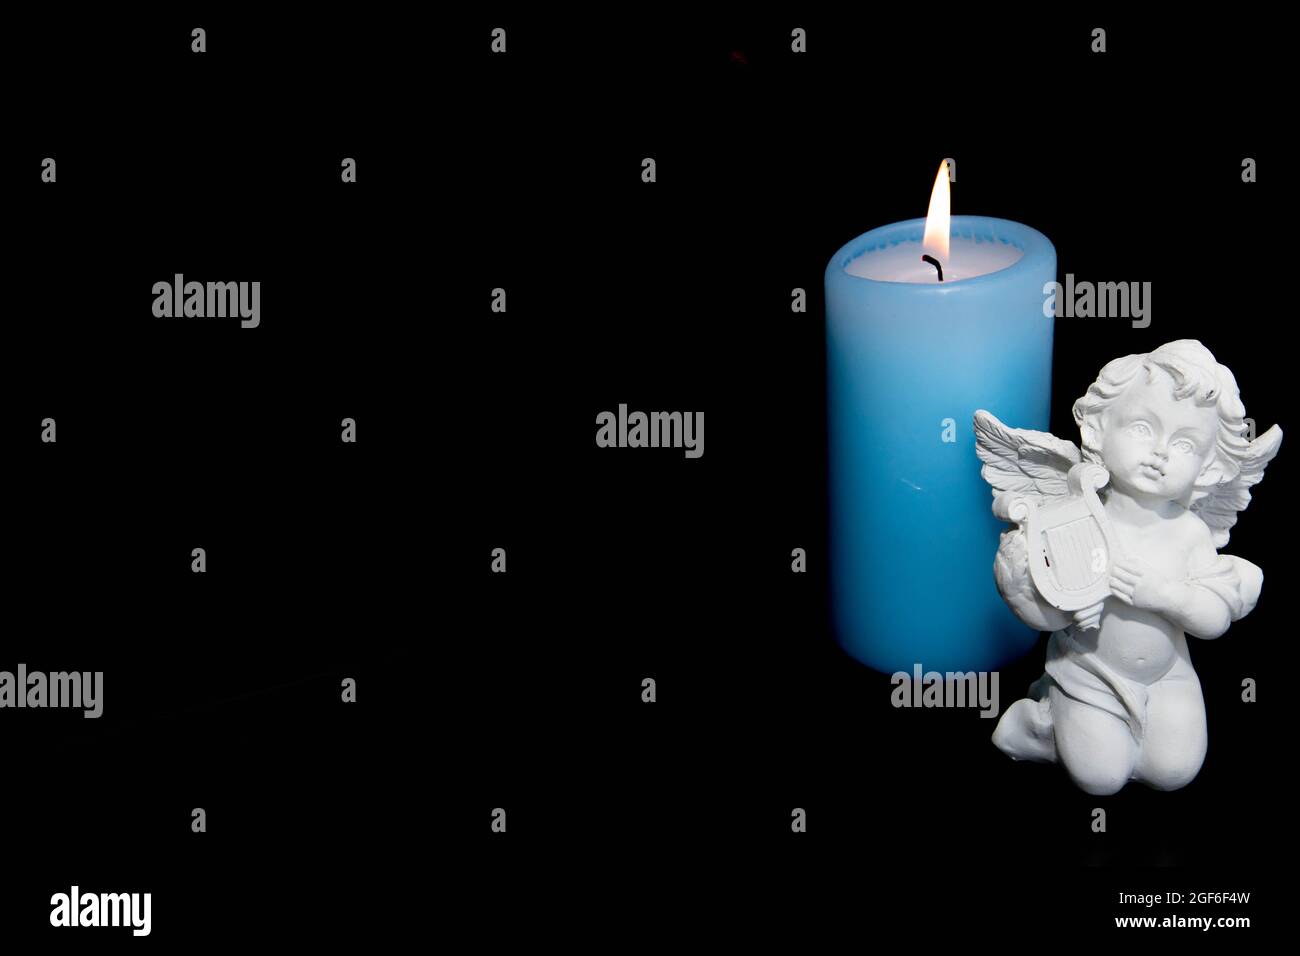 Vela mecha, vela de Navidad, primer advenimiento, vela encendida, bokeh  suave, luz de velas, llama, noche santa Fotografía de stock - Alamy